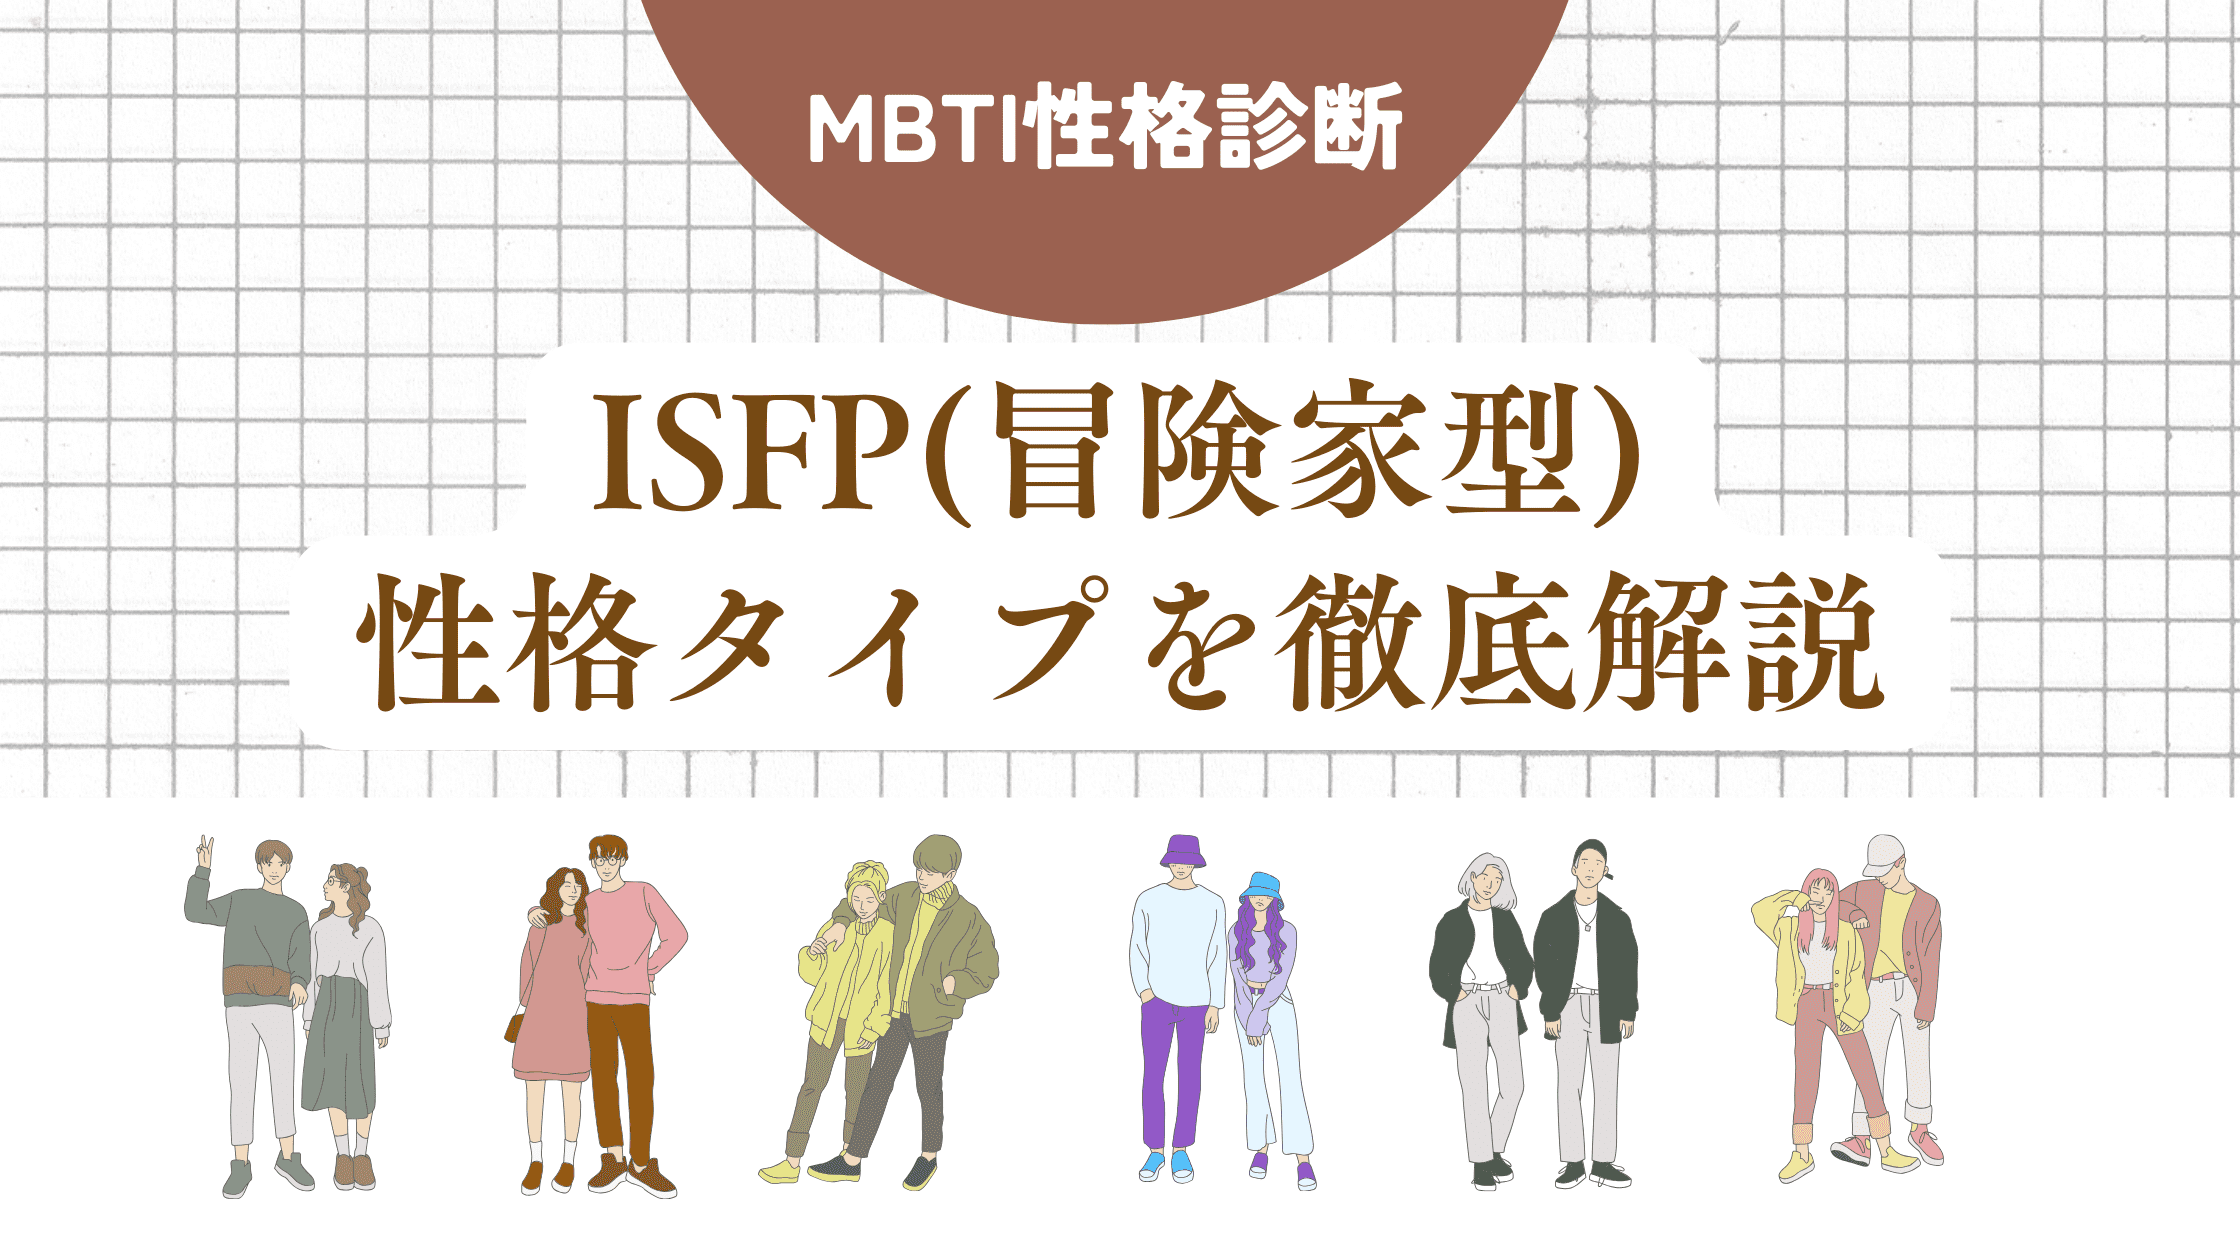 ISFP(冒険家型)